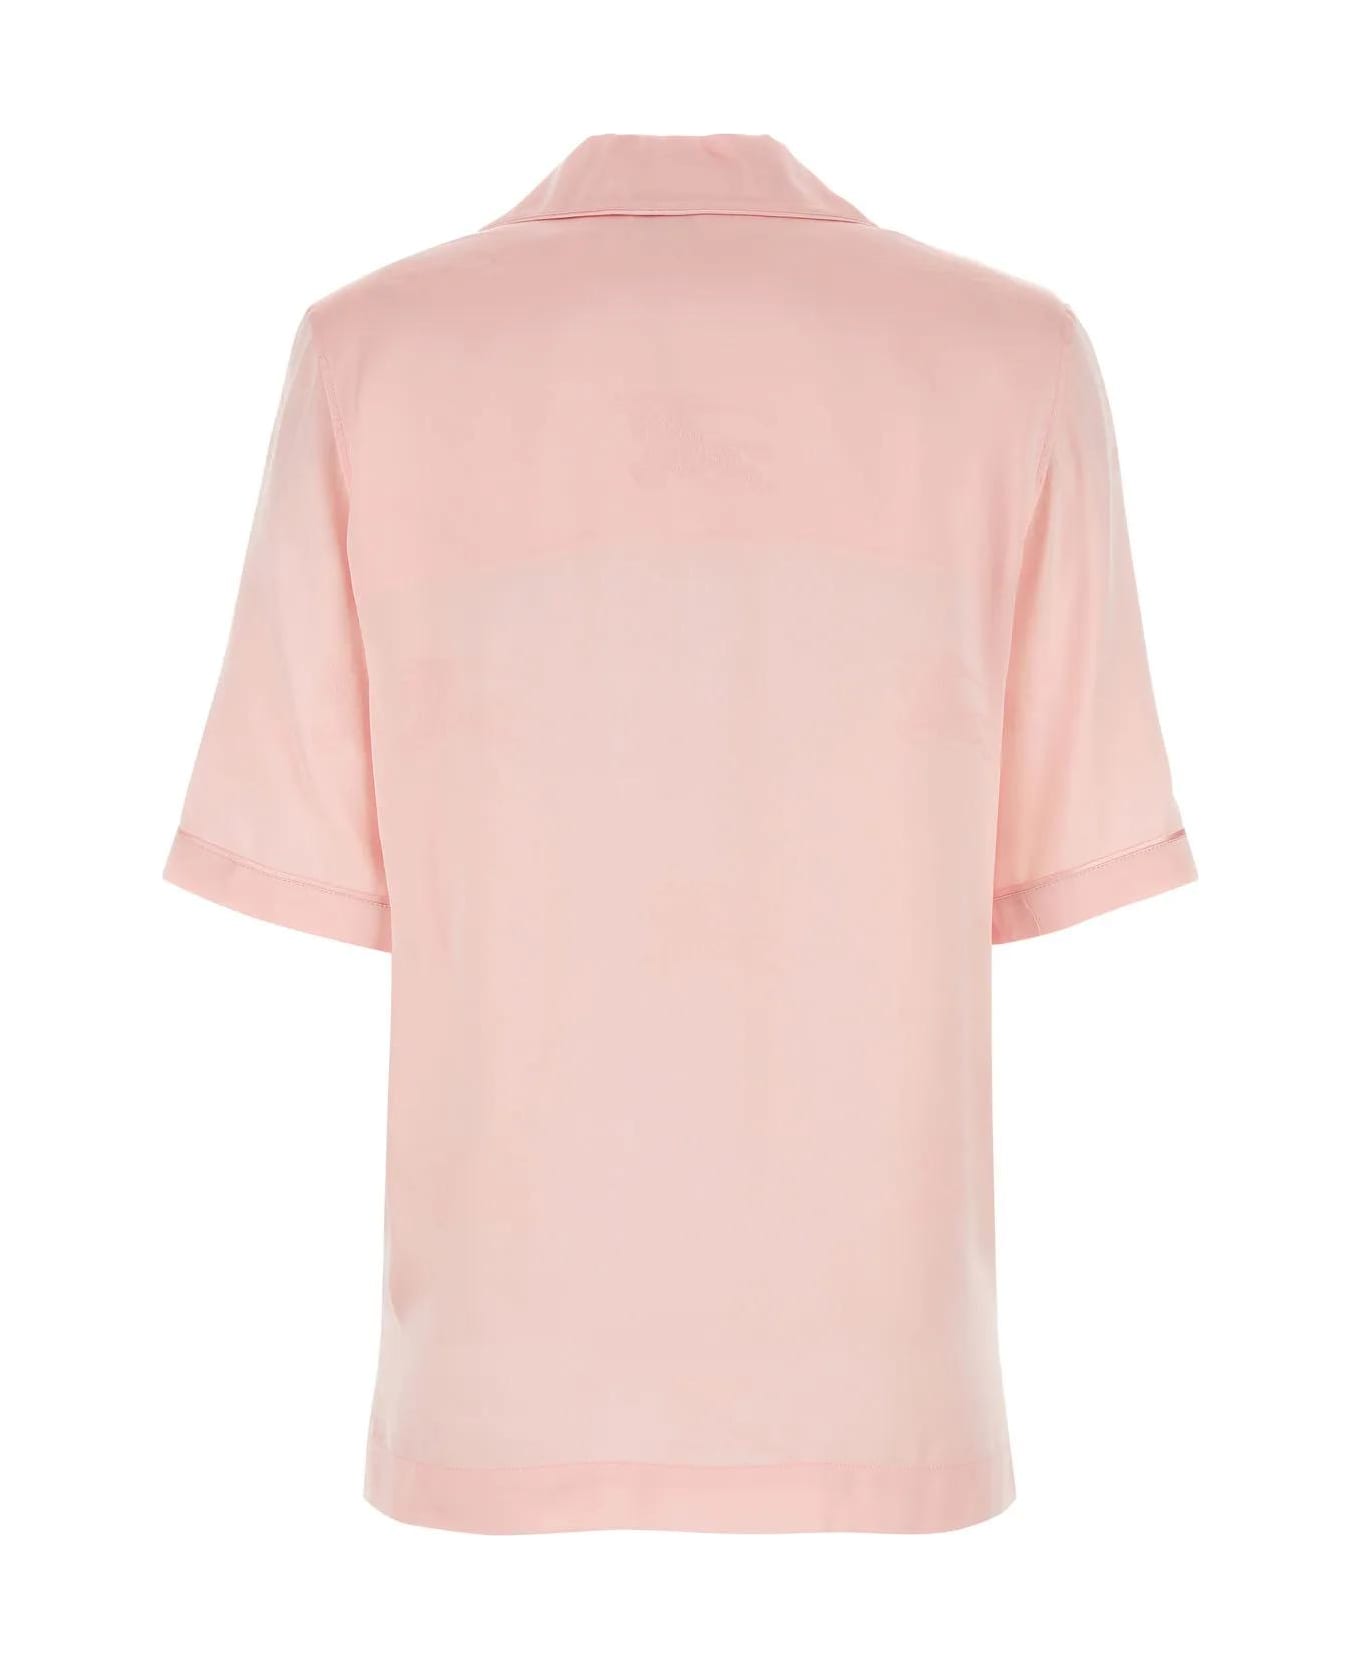 Burberry Pastel Pink Satin Shirt - Pink シャツ